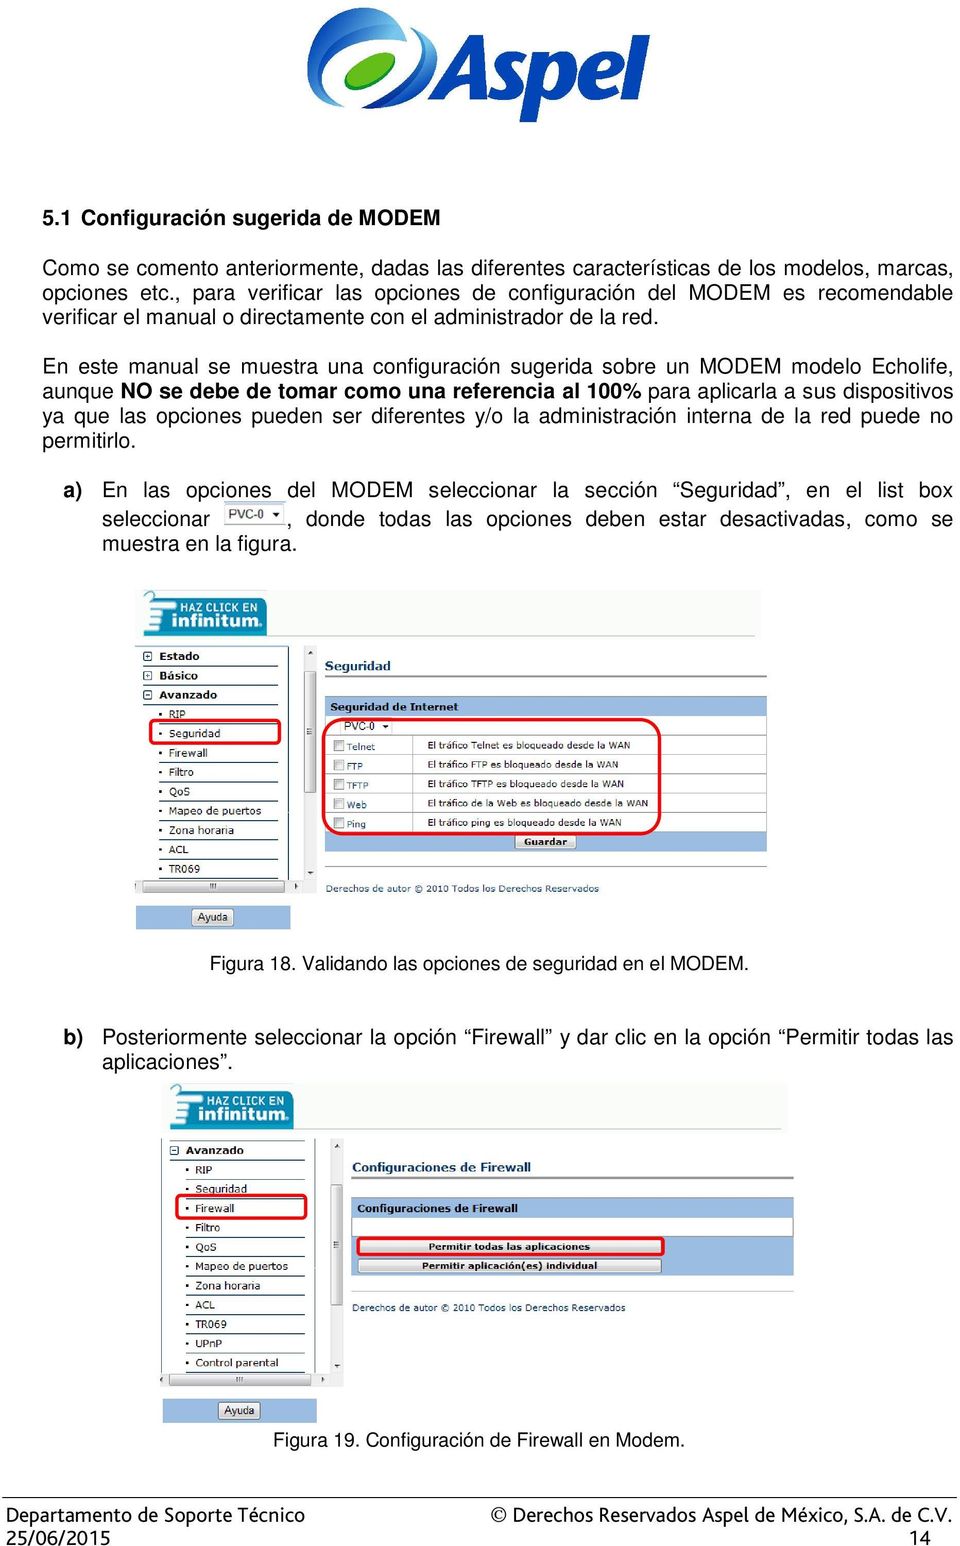 En este manual se muestra una configuración sugerida sobre un MODEM modelo Echolife, aunque NO se debe de tomar como una referencia al 100% para aplicarla a sus dispositivos ya que las opciones